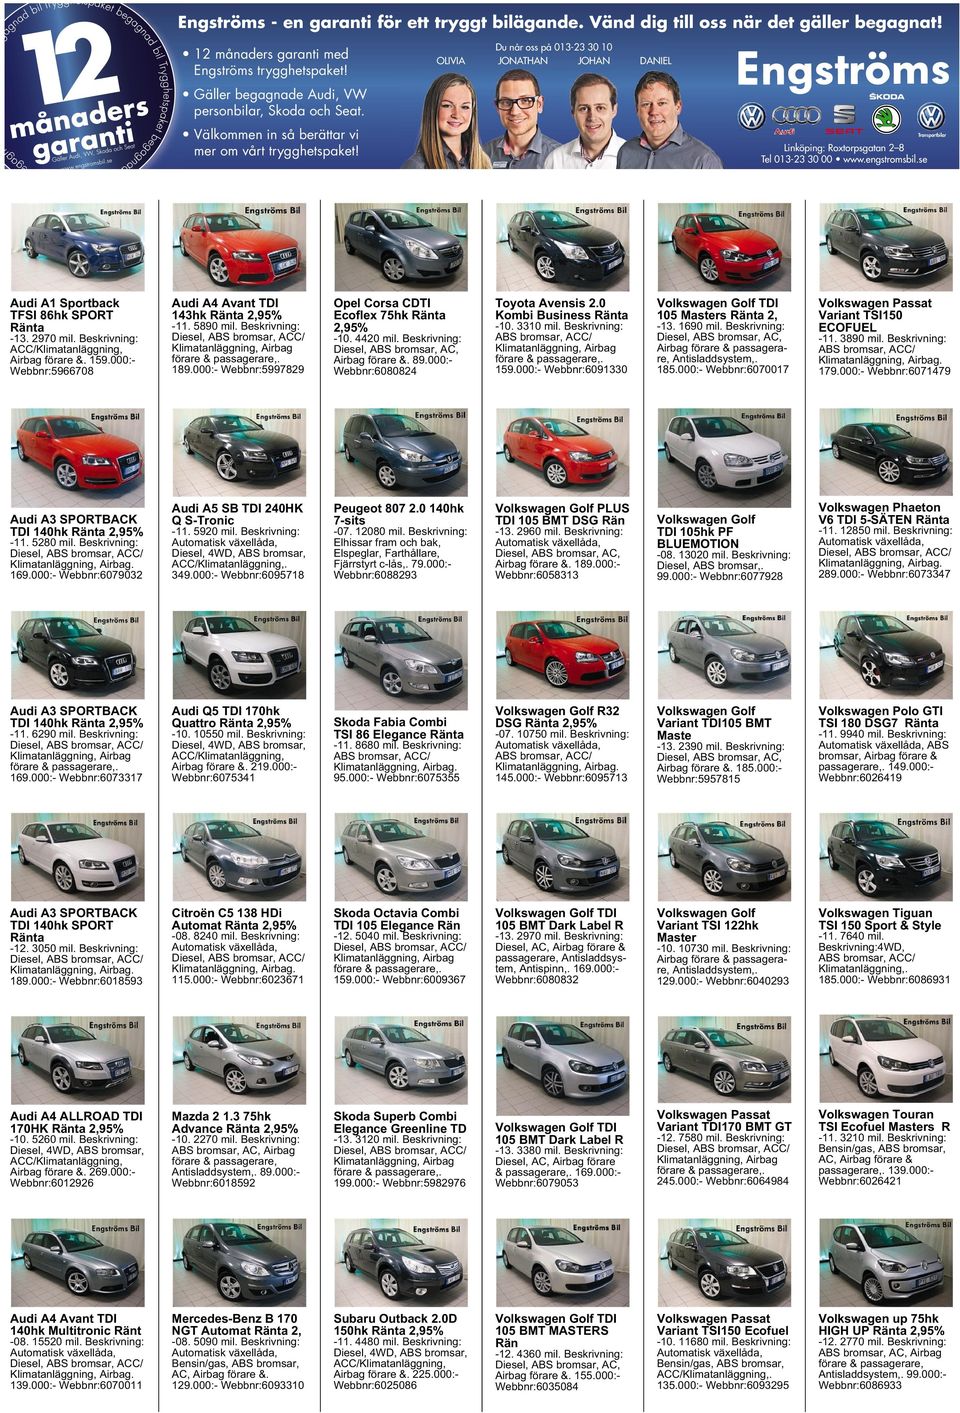 000:- Webbnr:5966708 Audi A4 Avant TDI 143hk Ränta 2,95% -11. 5890 mil. Beskrivning: Diesel, ABS bromsar, ACC/ Klimatanläggning, Airbag förare &passagerare,. 189.